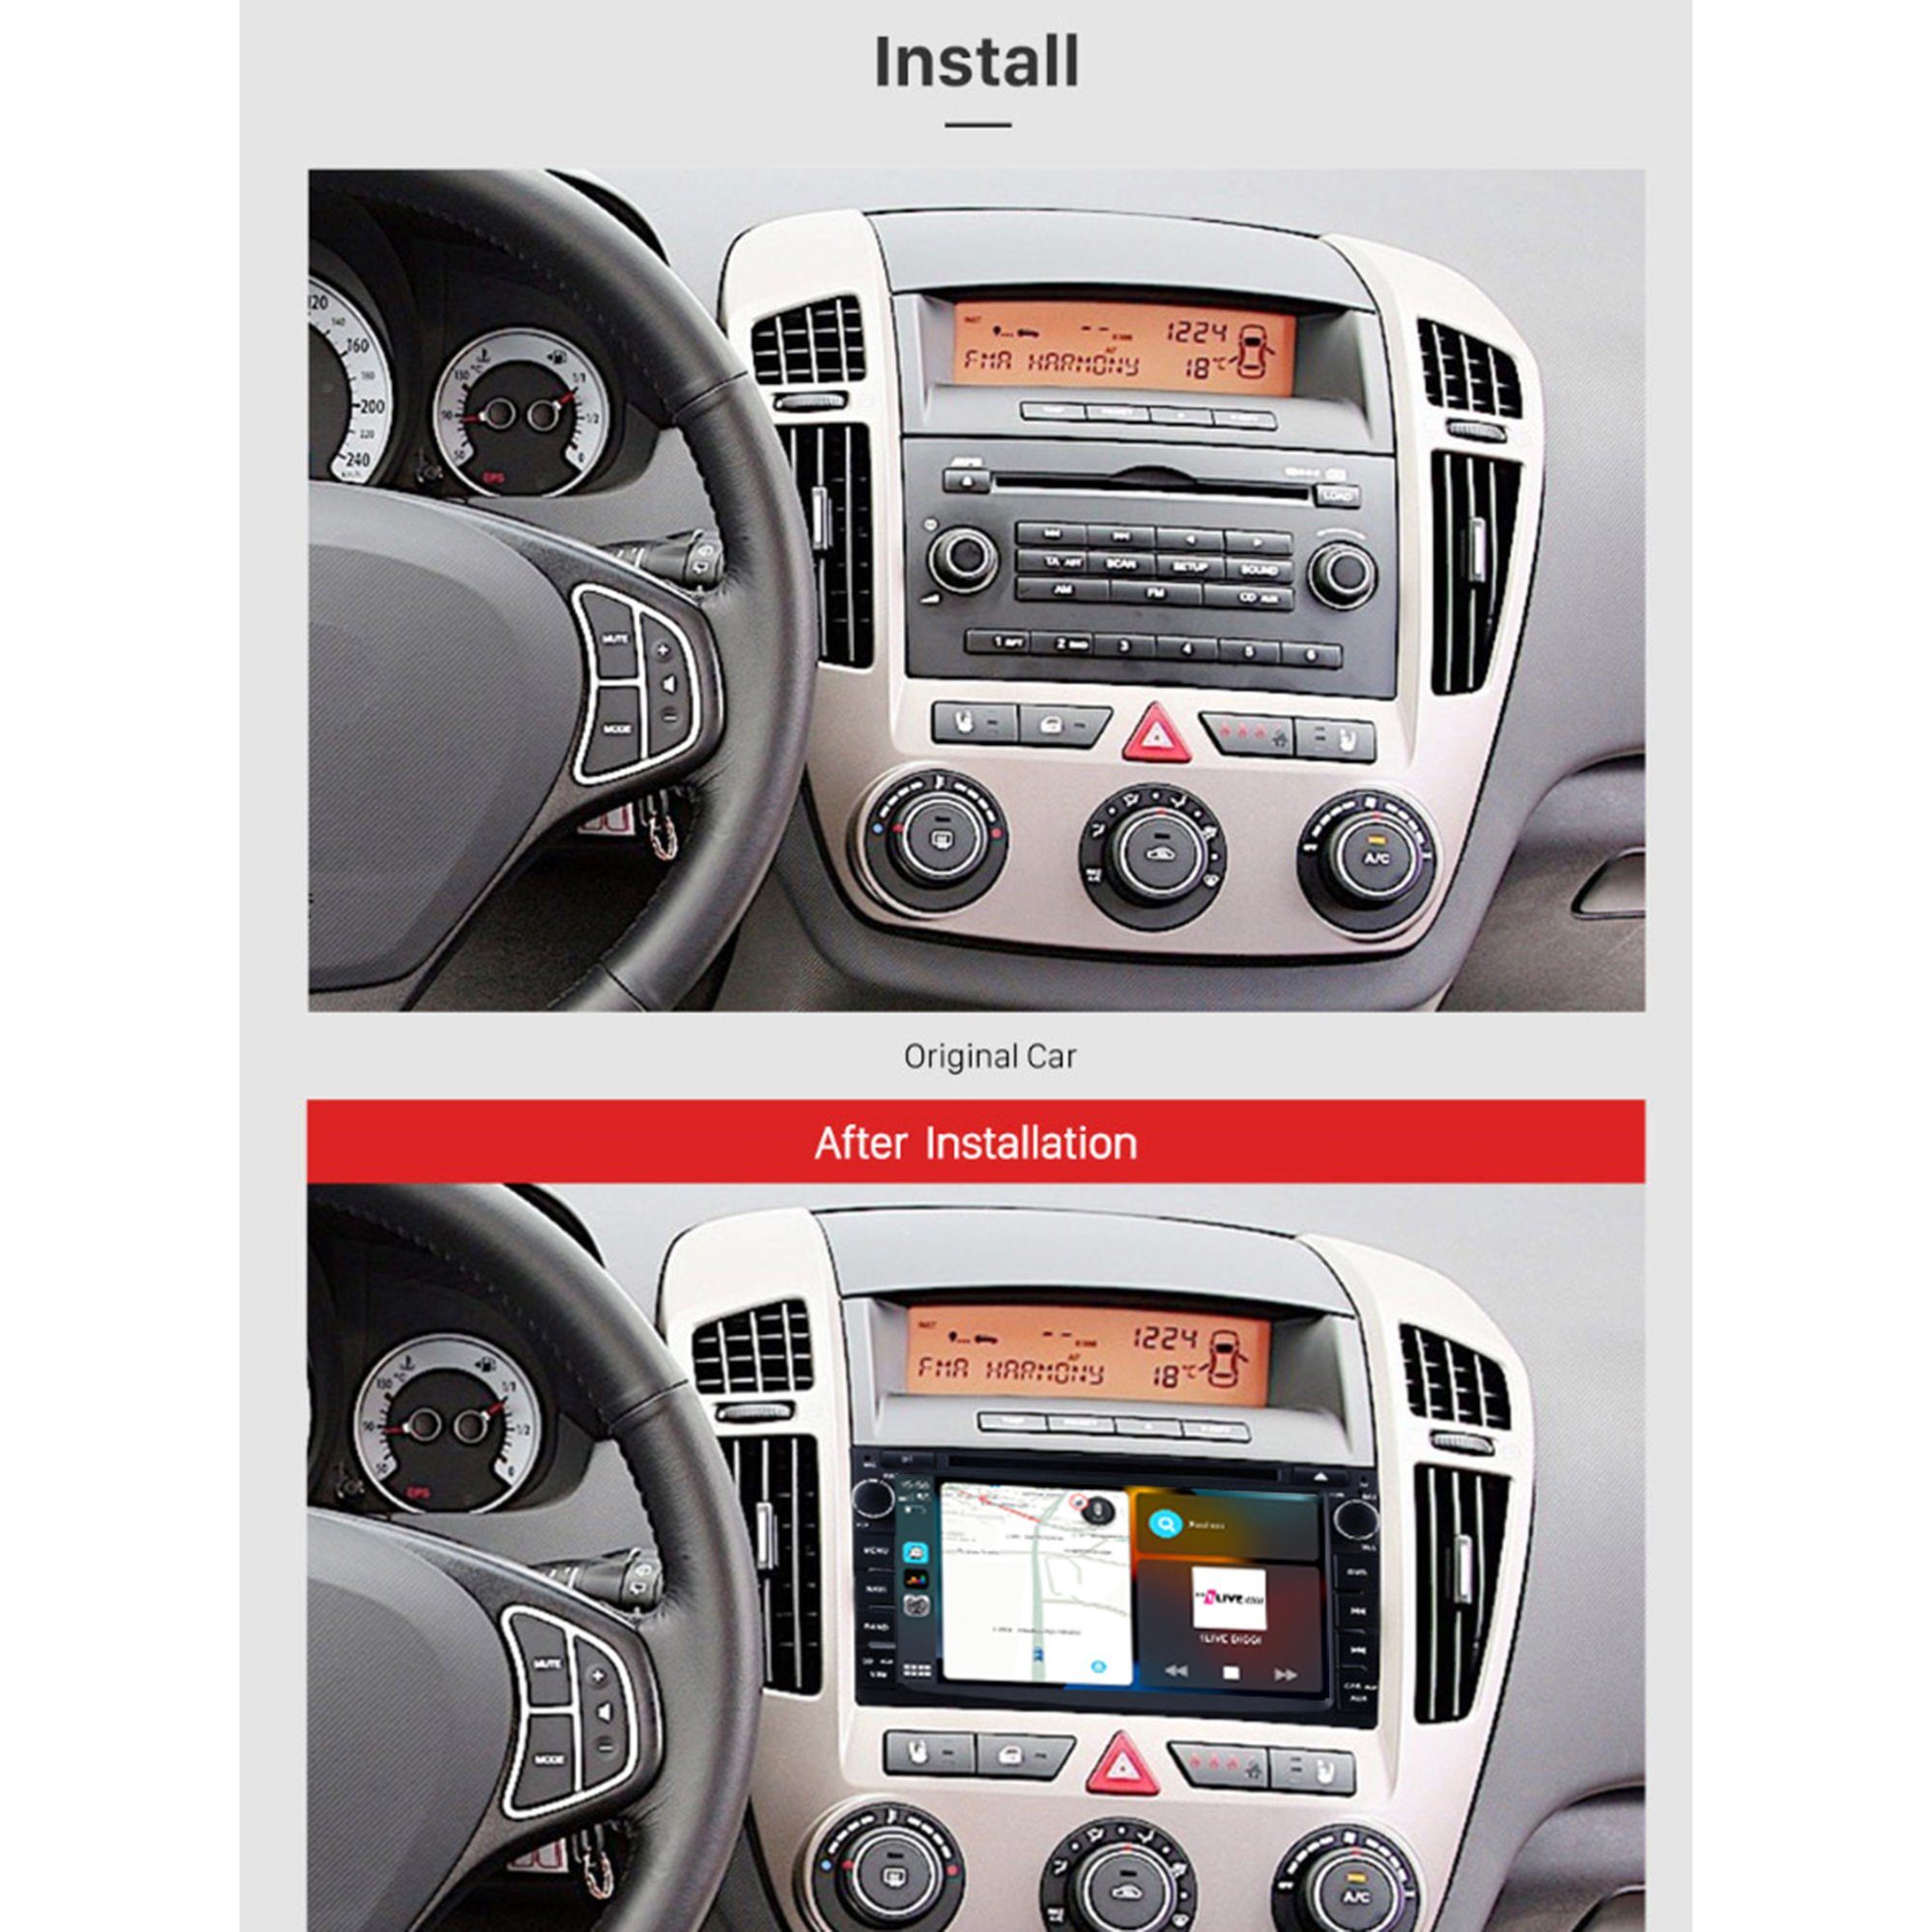 TAFFIO Radio Touch 7" Cee'd Android GPS Für CarPlay Venga Einbau-Navigationsgerät DVD AndroidAuto Kia